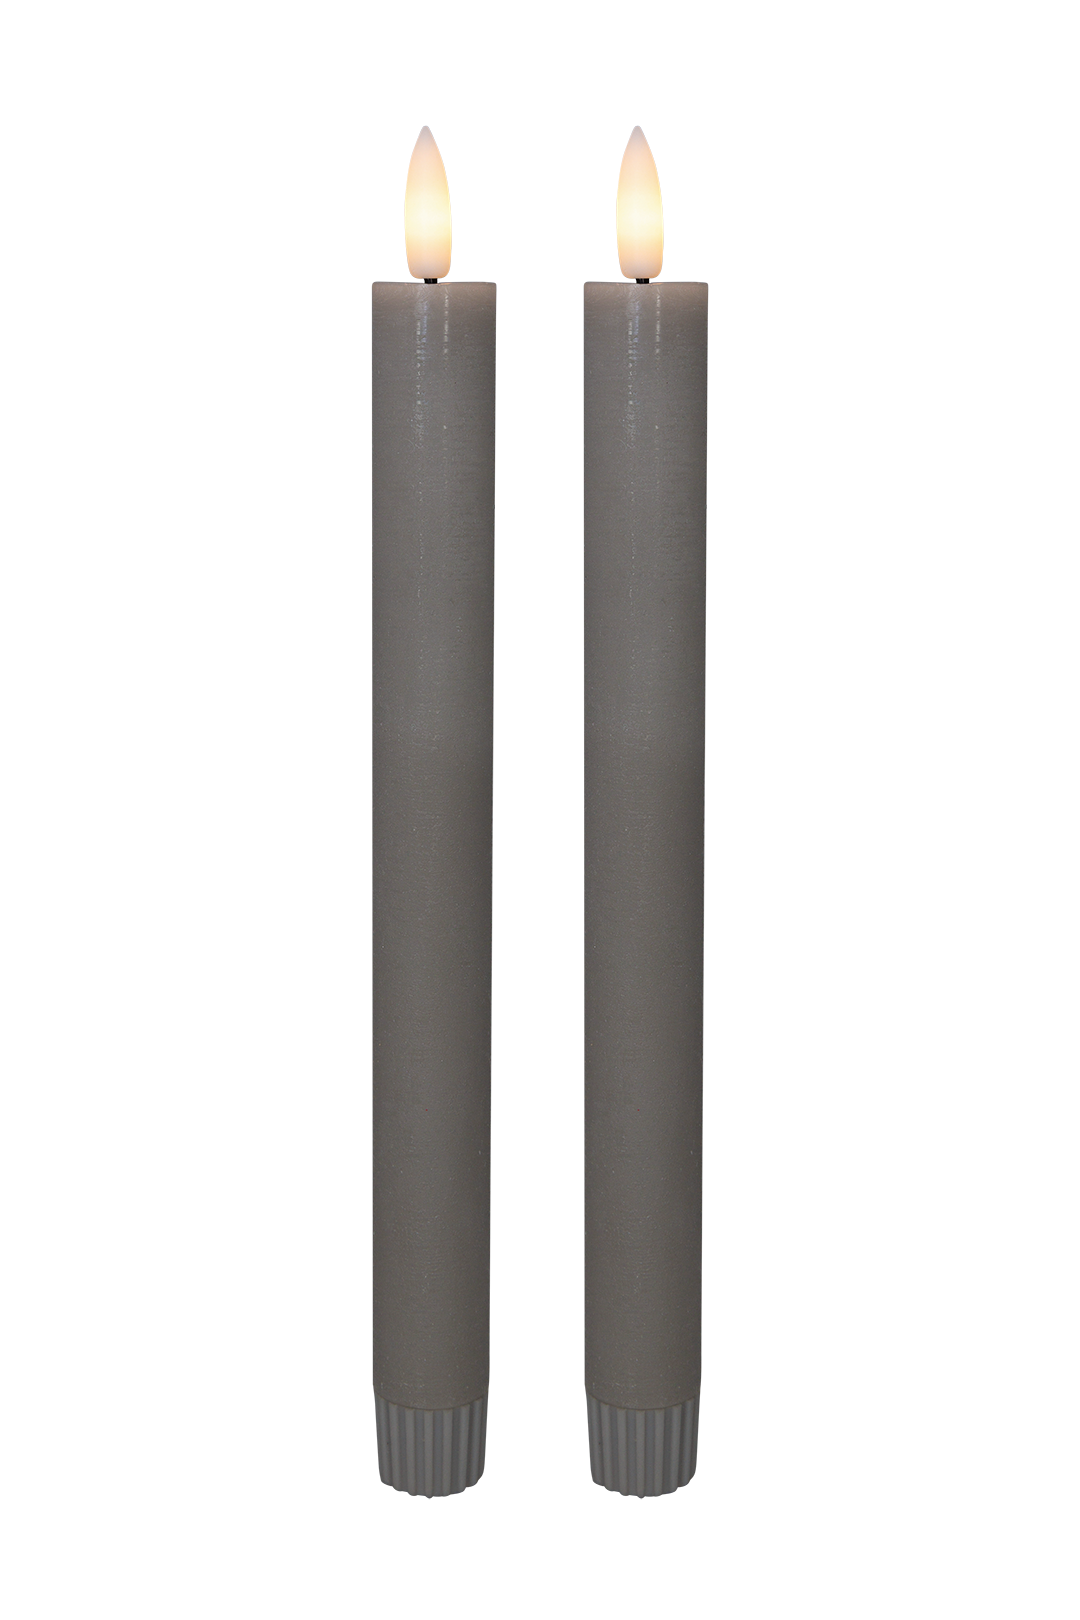 Se Cozzy kronelys, 3D flamme, 22,2 cm, grå, 2 stk (bruges med fjernbetjening) hos Pixojet